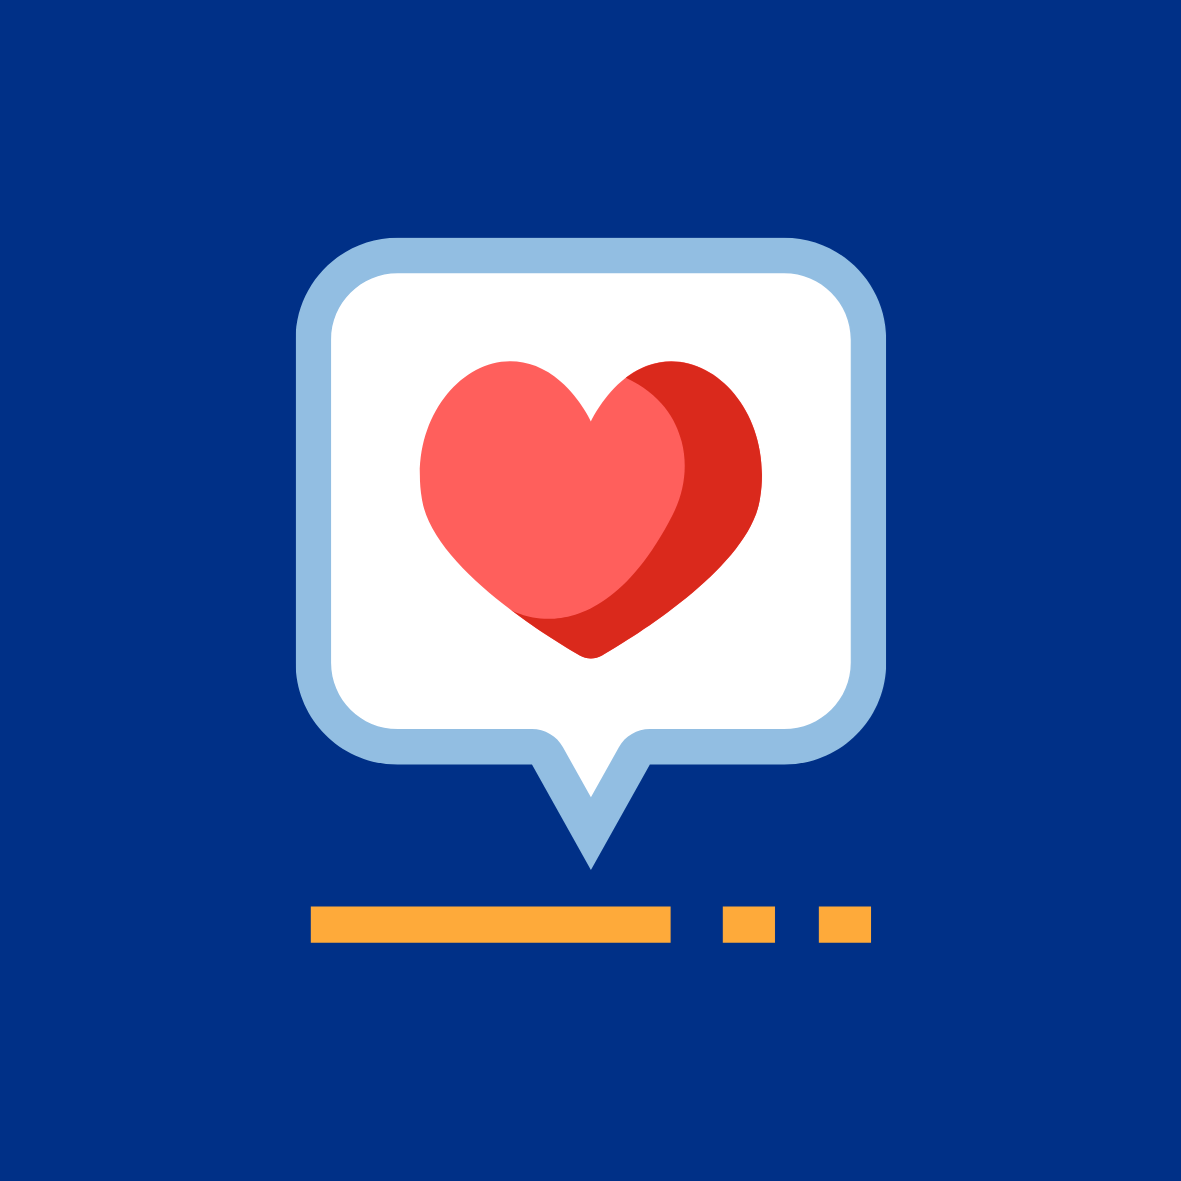 Speech Bubble With Heart Emoji